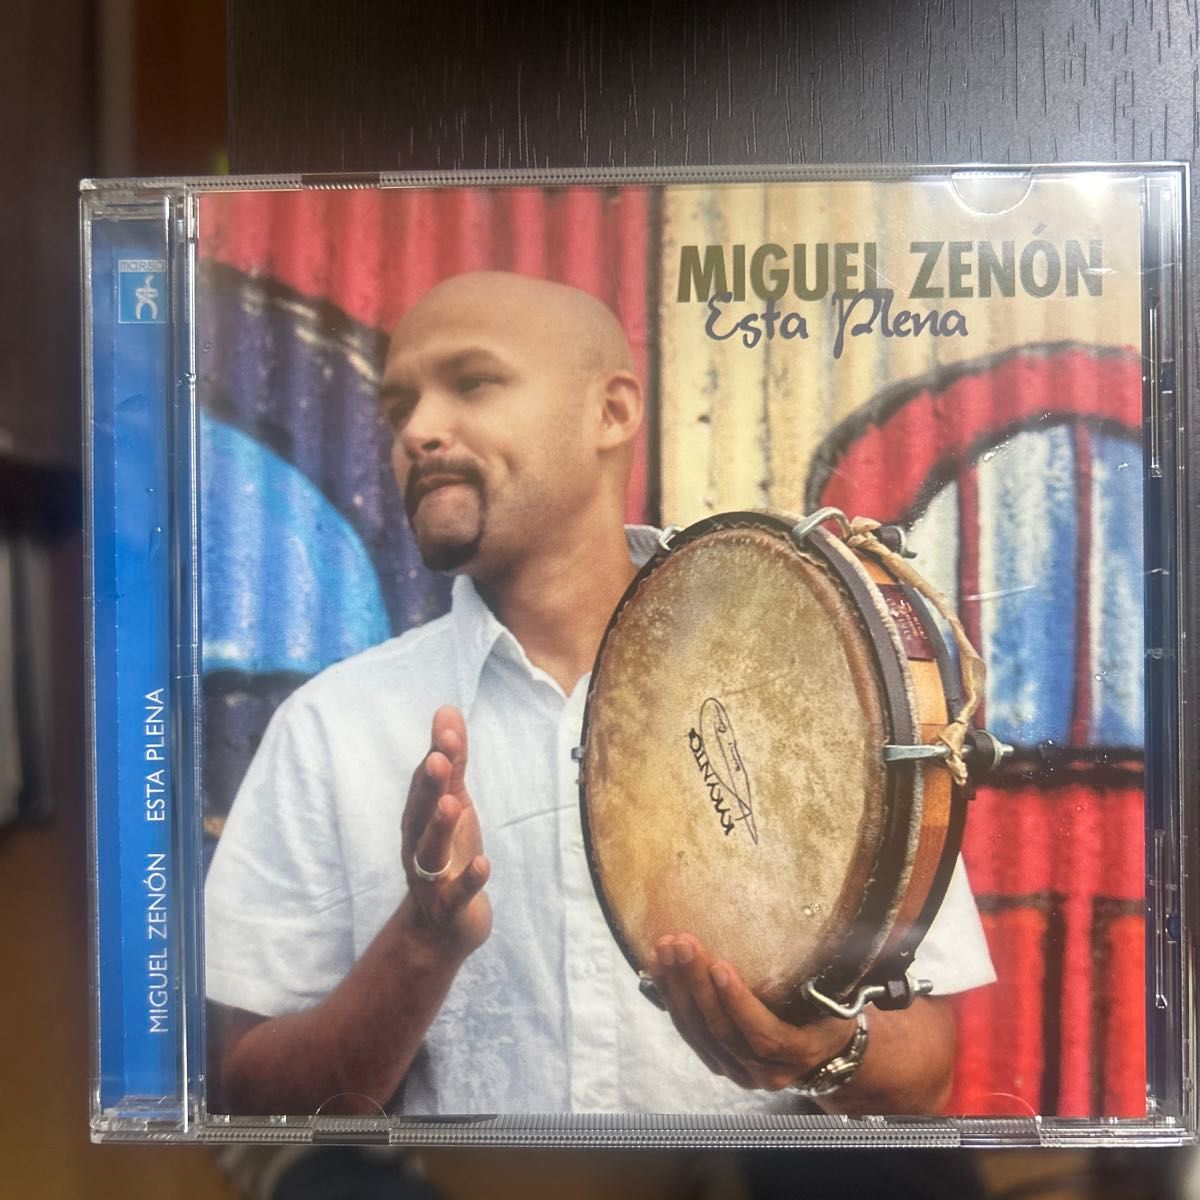 Miguel Zenon Esta Plena